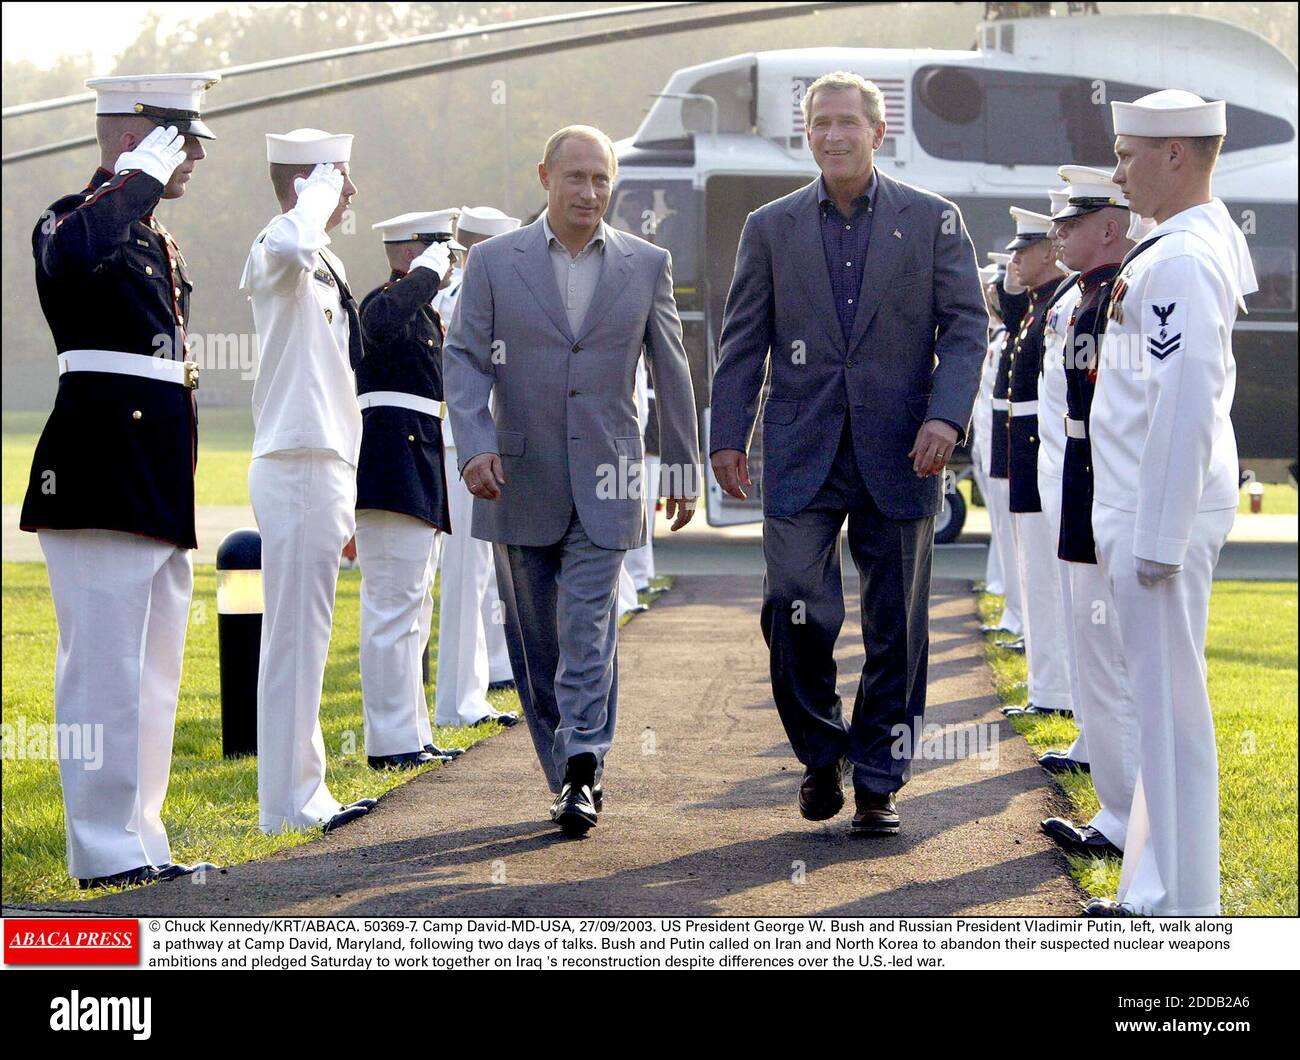 PAS DE FILM, PAS DE VIDÉO, PAS DE TV, PAS DE DOCUMENTAIRE - © CHUCK KENNEDY/KRT/ABACA. 50369-7. Camp David-MD-USA, 27/09/2003. Le président AMÉRICAIN George W. Bush et le président russe Vladimir Poutine, à leur sortie, marchent le long d'une voie à Camp David, Maryland, après deux jours de pourparlers. Bush et Poutine ont appelé l'Iran et le Nord-K Banque D'Images